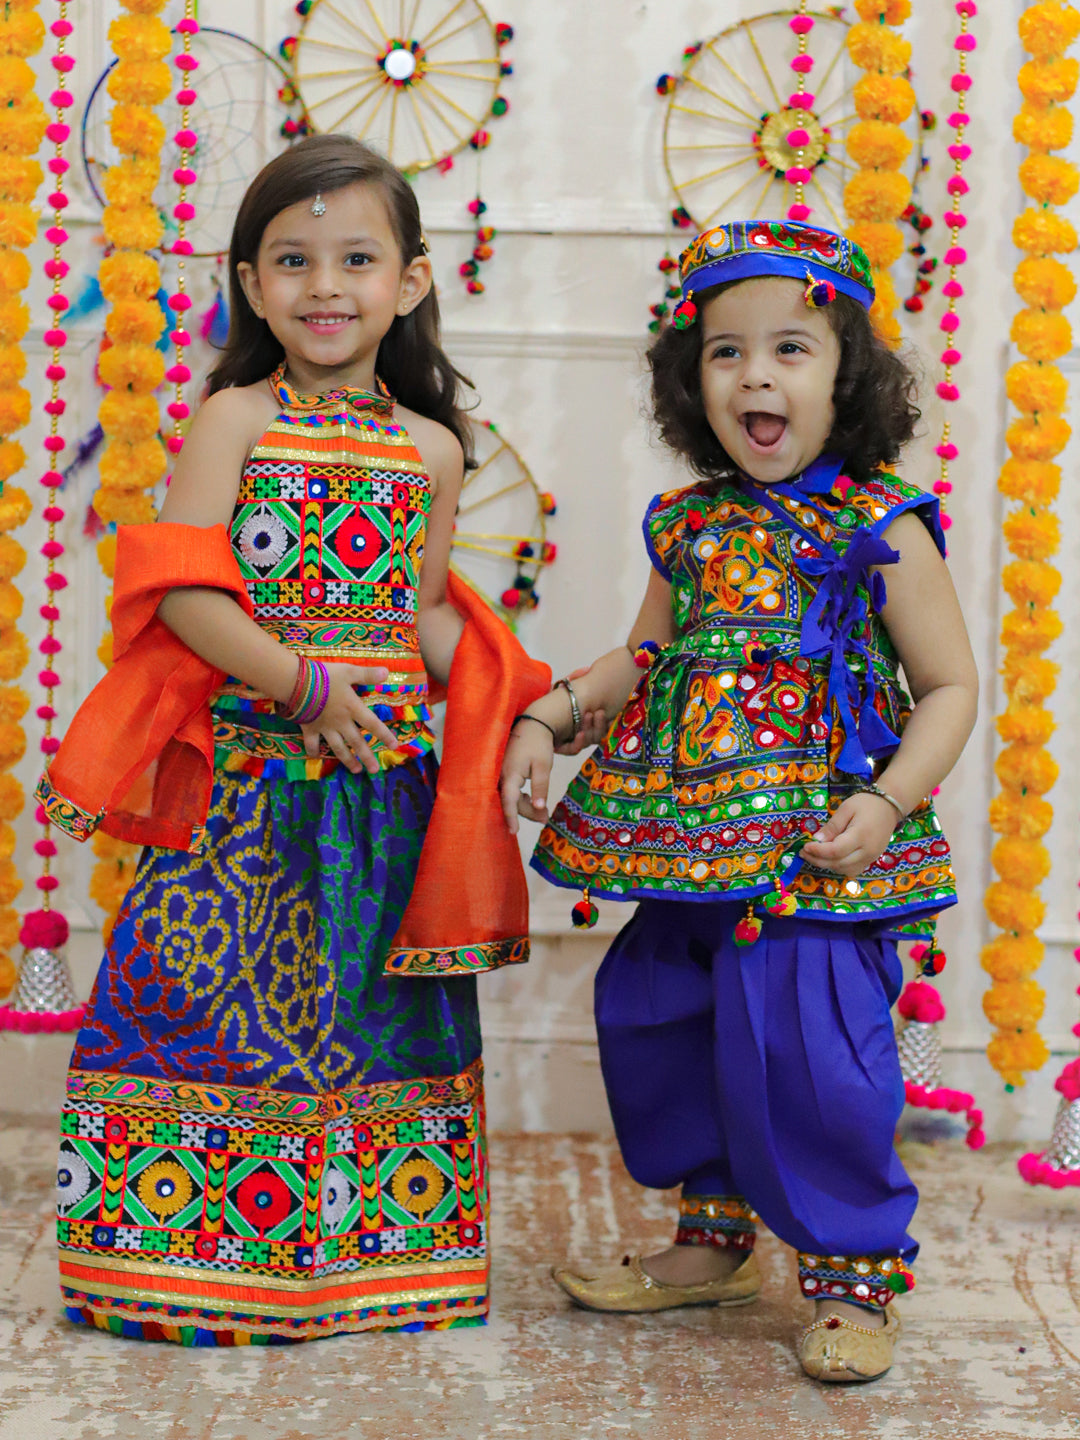 BowBee Sibling Embroidered kediya with Dhoti and Cap for Boys and Bandhani halter neck chaniya choli-Blue